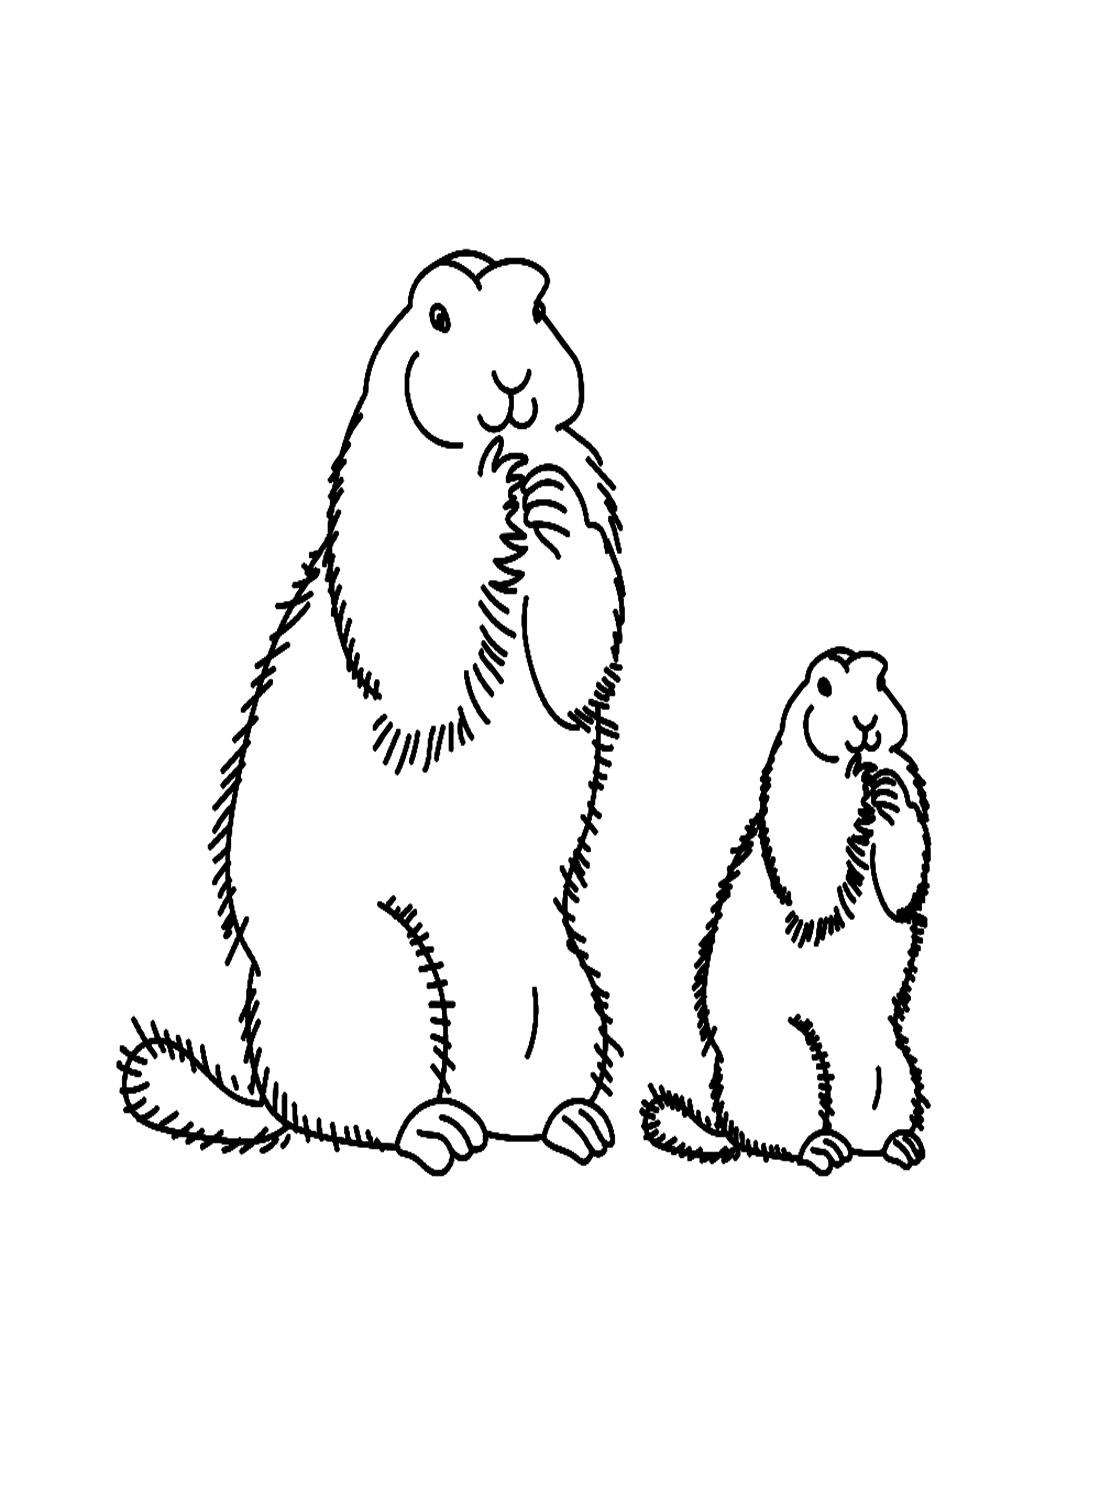 Familie van marmotten van Marmot